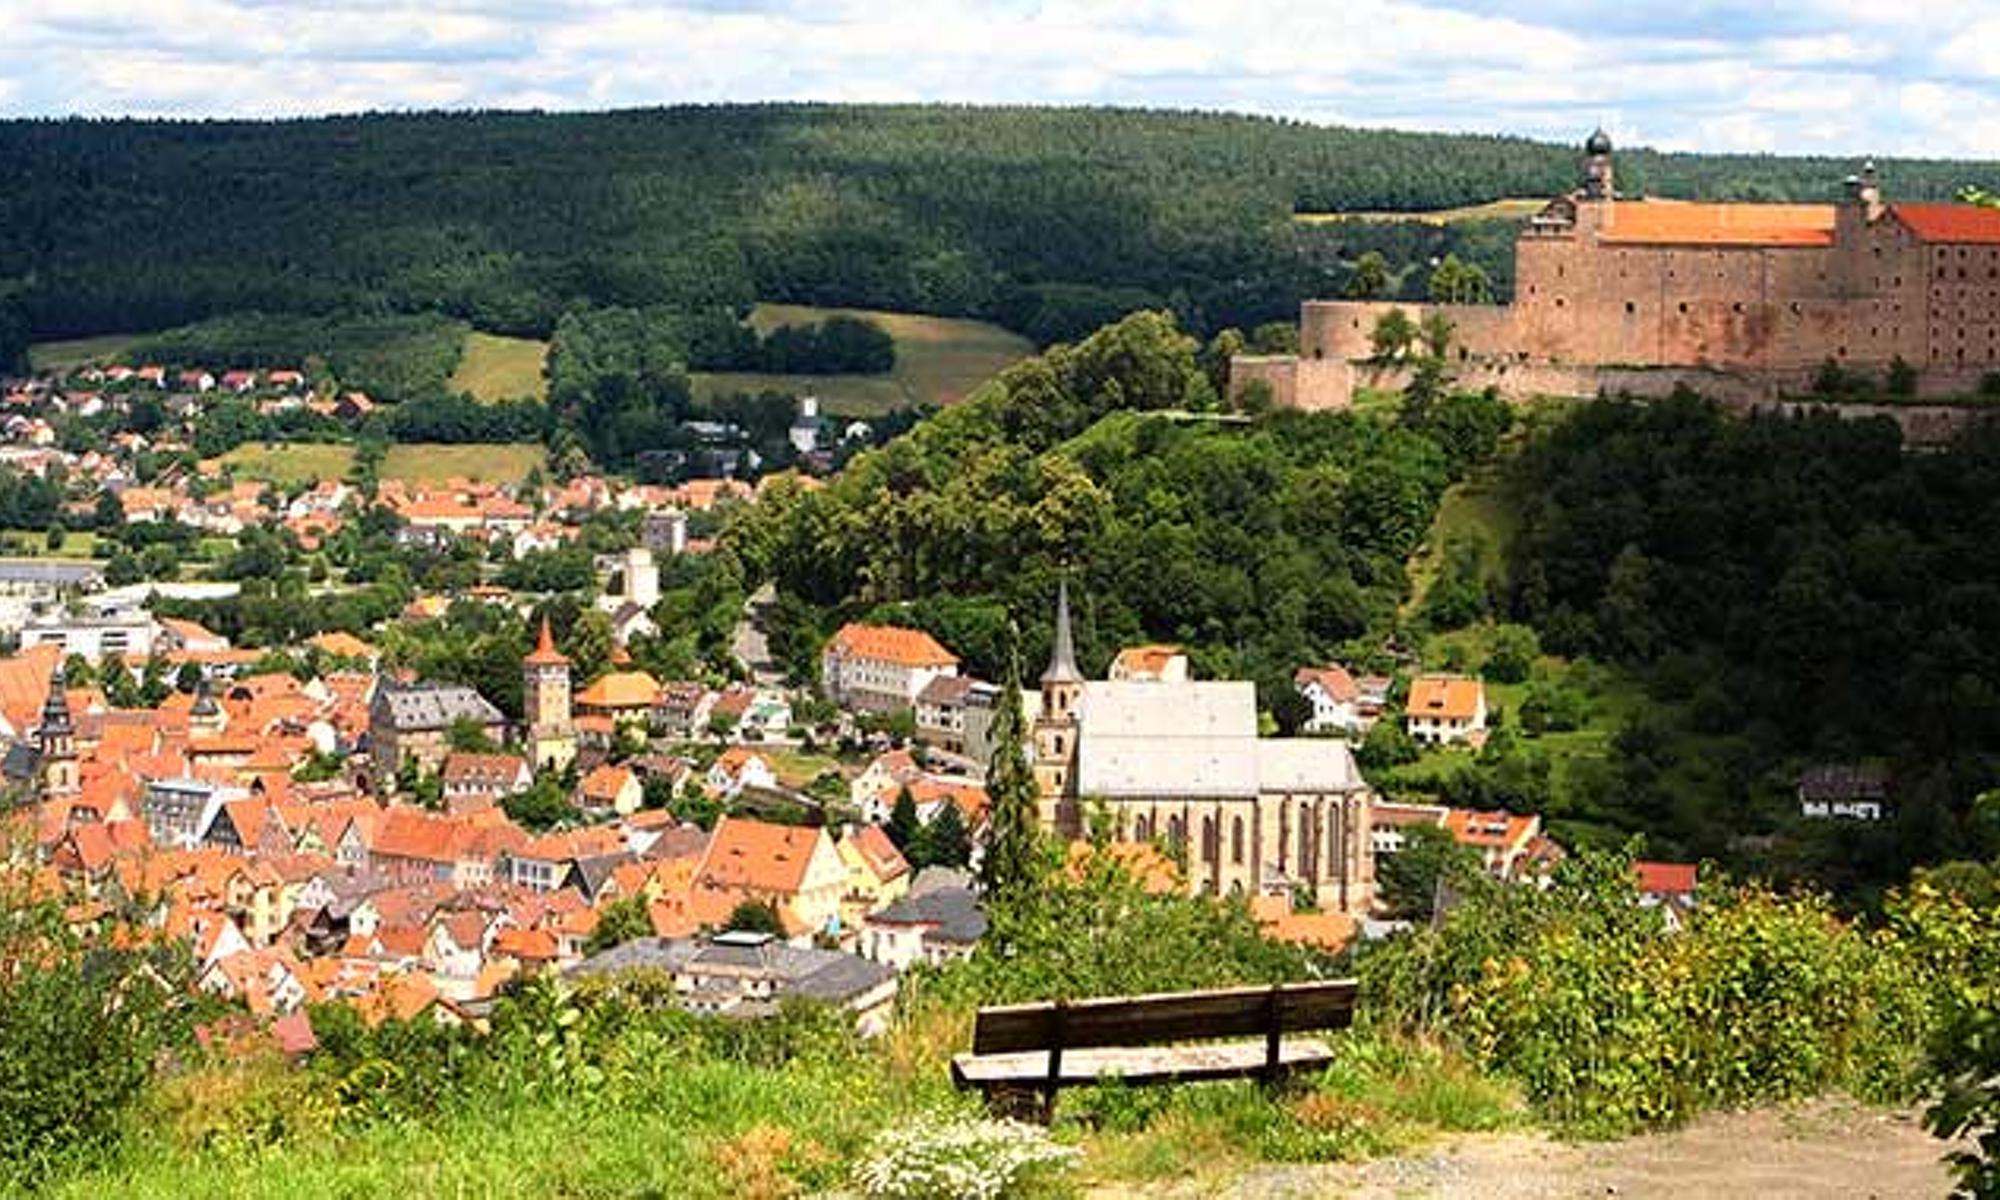 Foto: Stadt Kulmbach